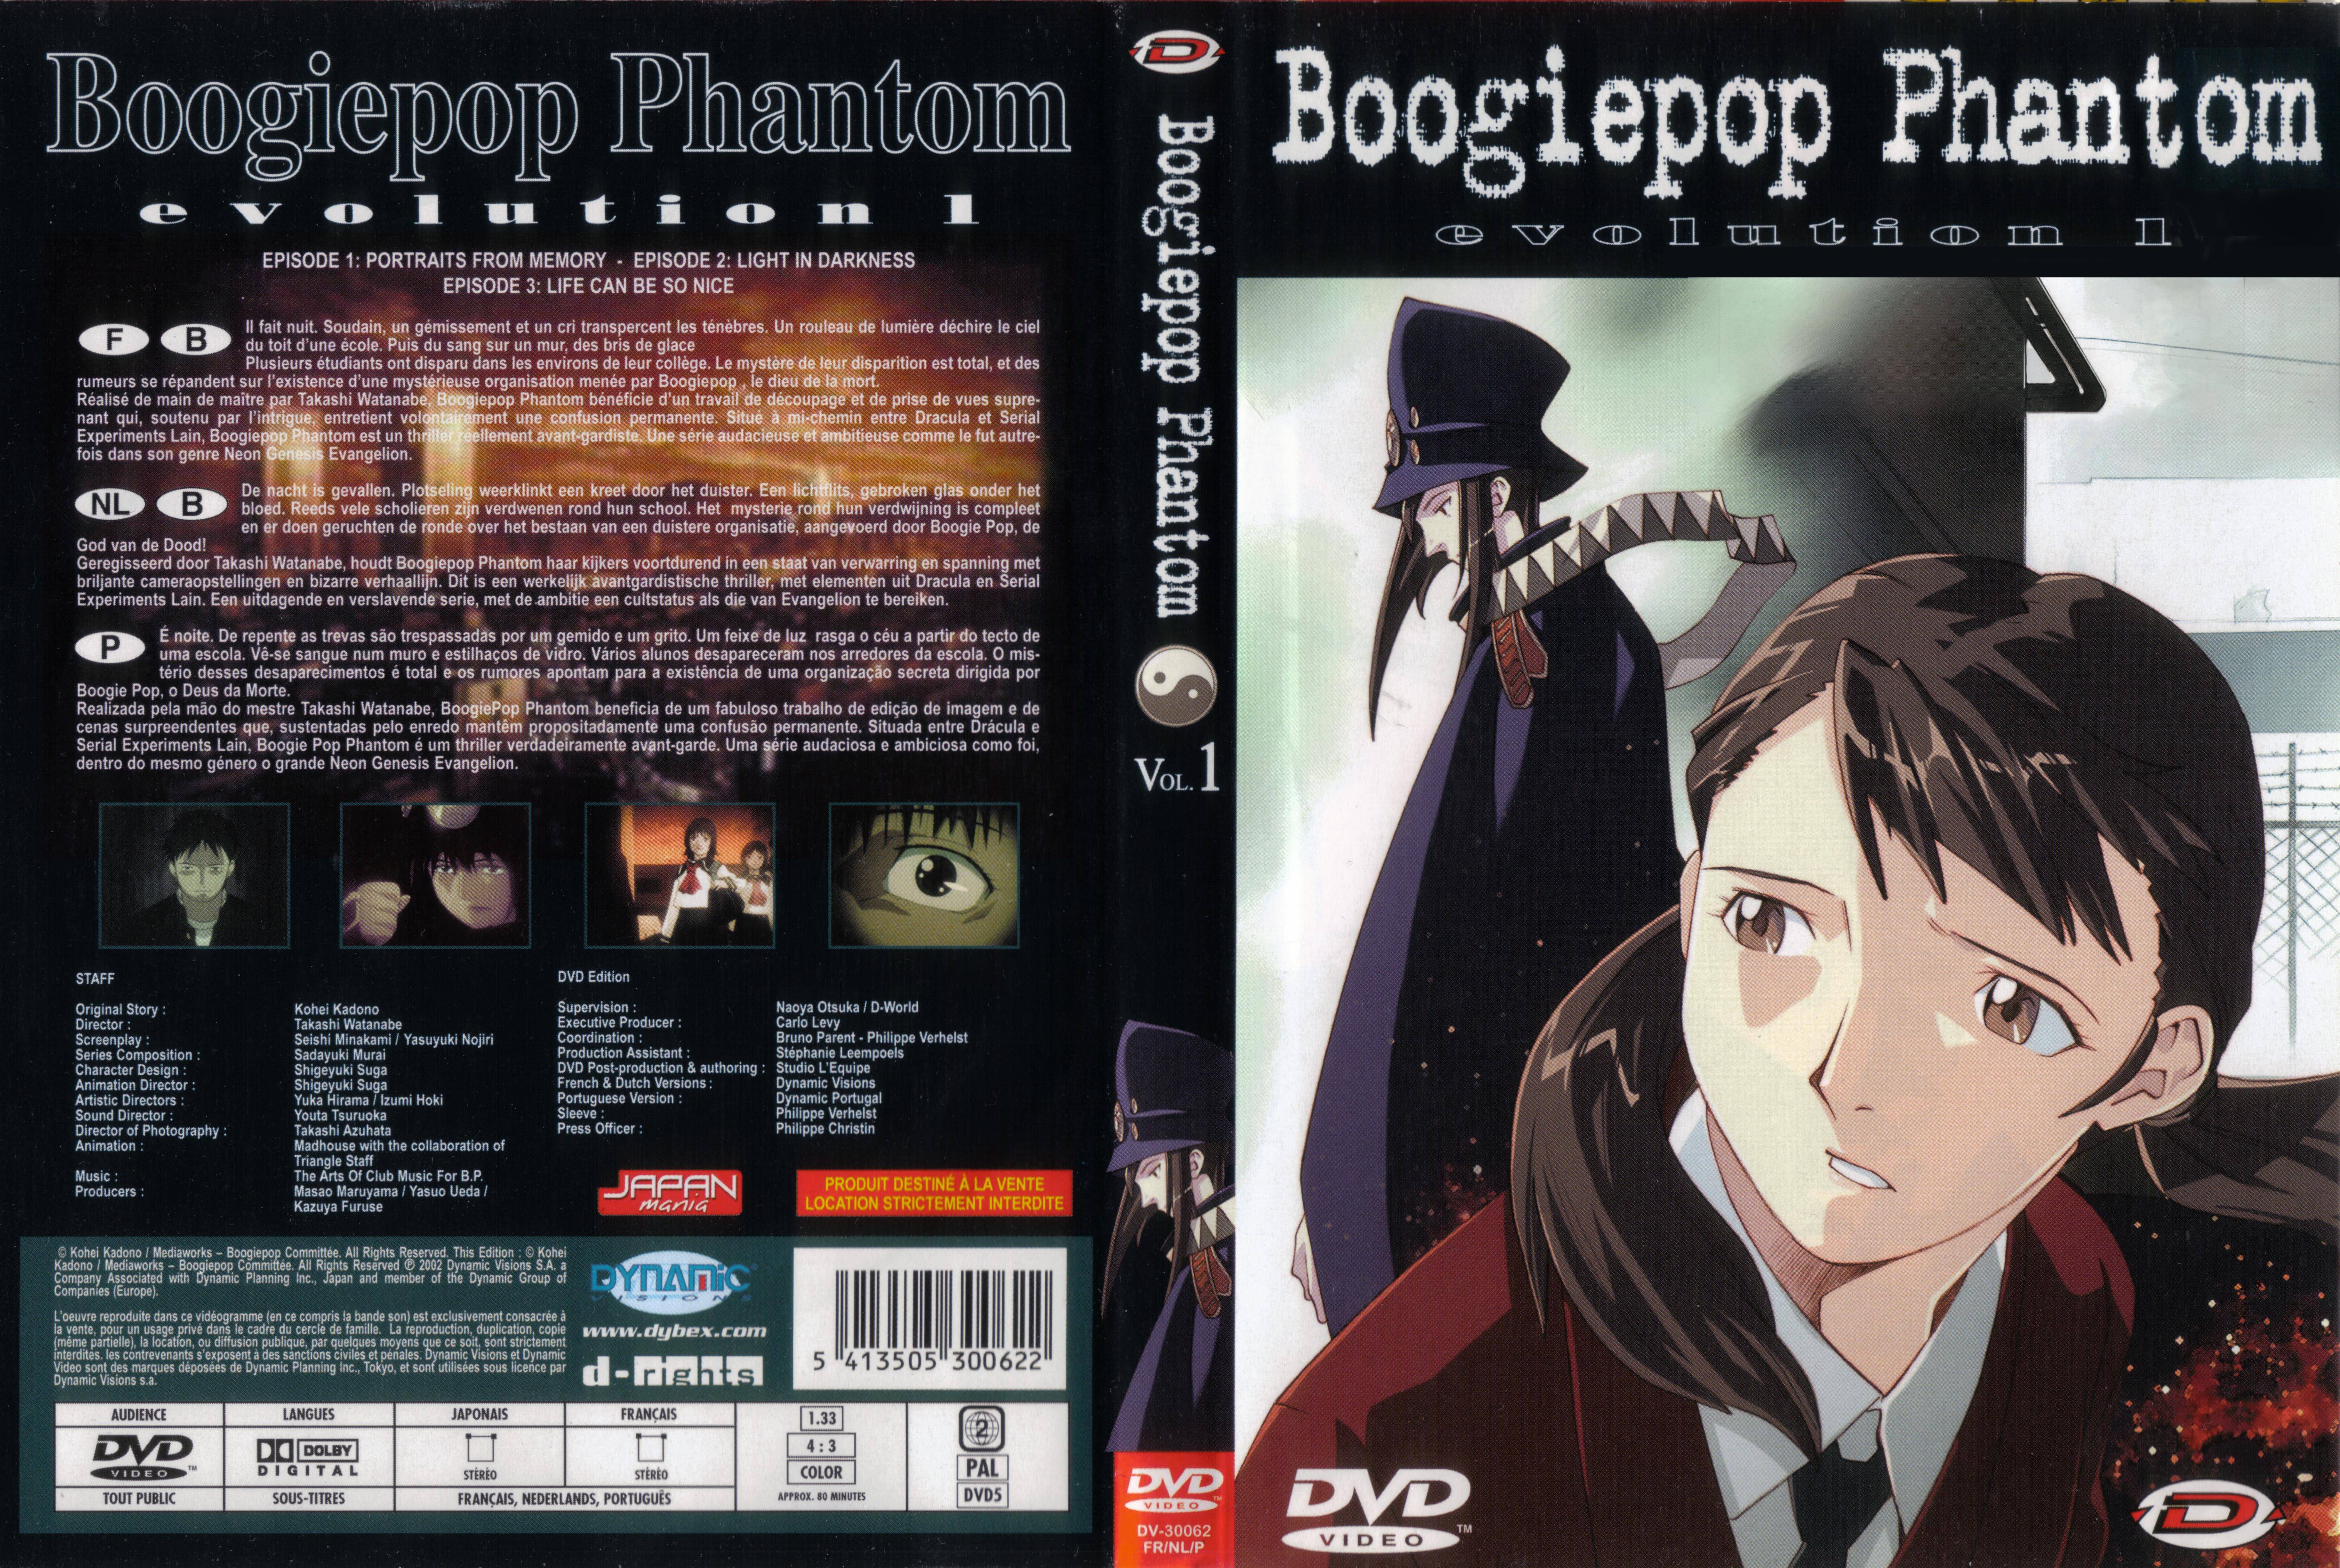 Jaquette DVD Boogiepop phantom vol 01